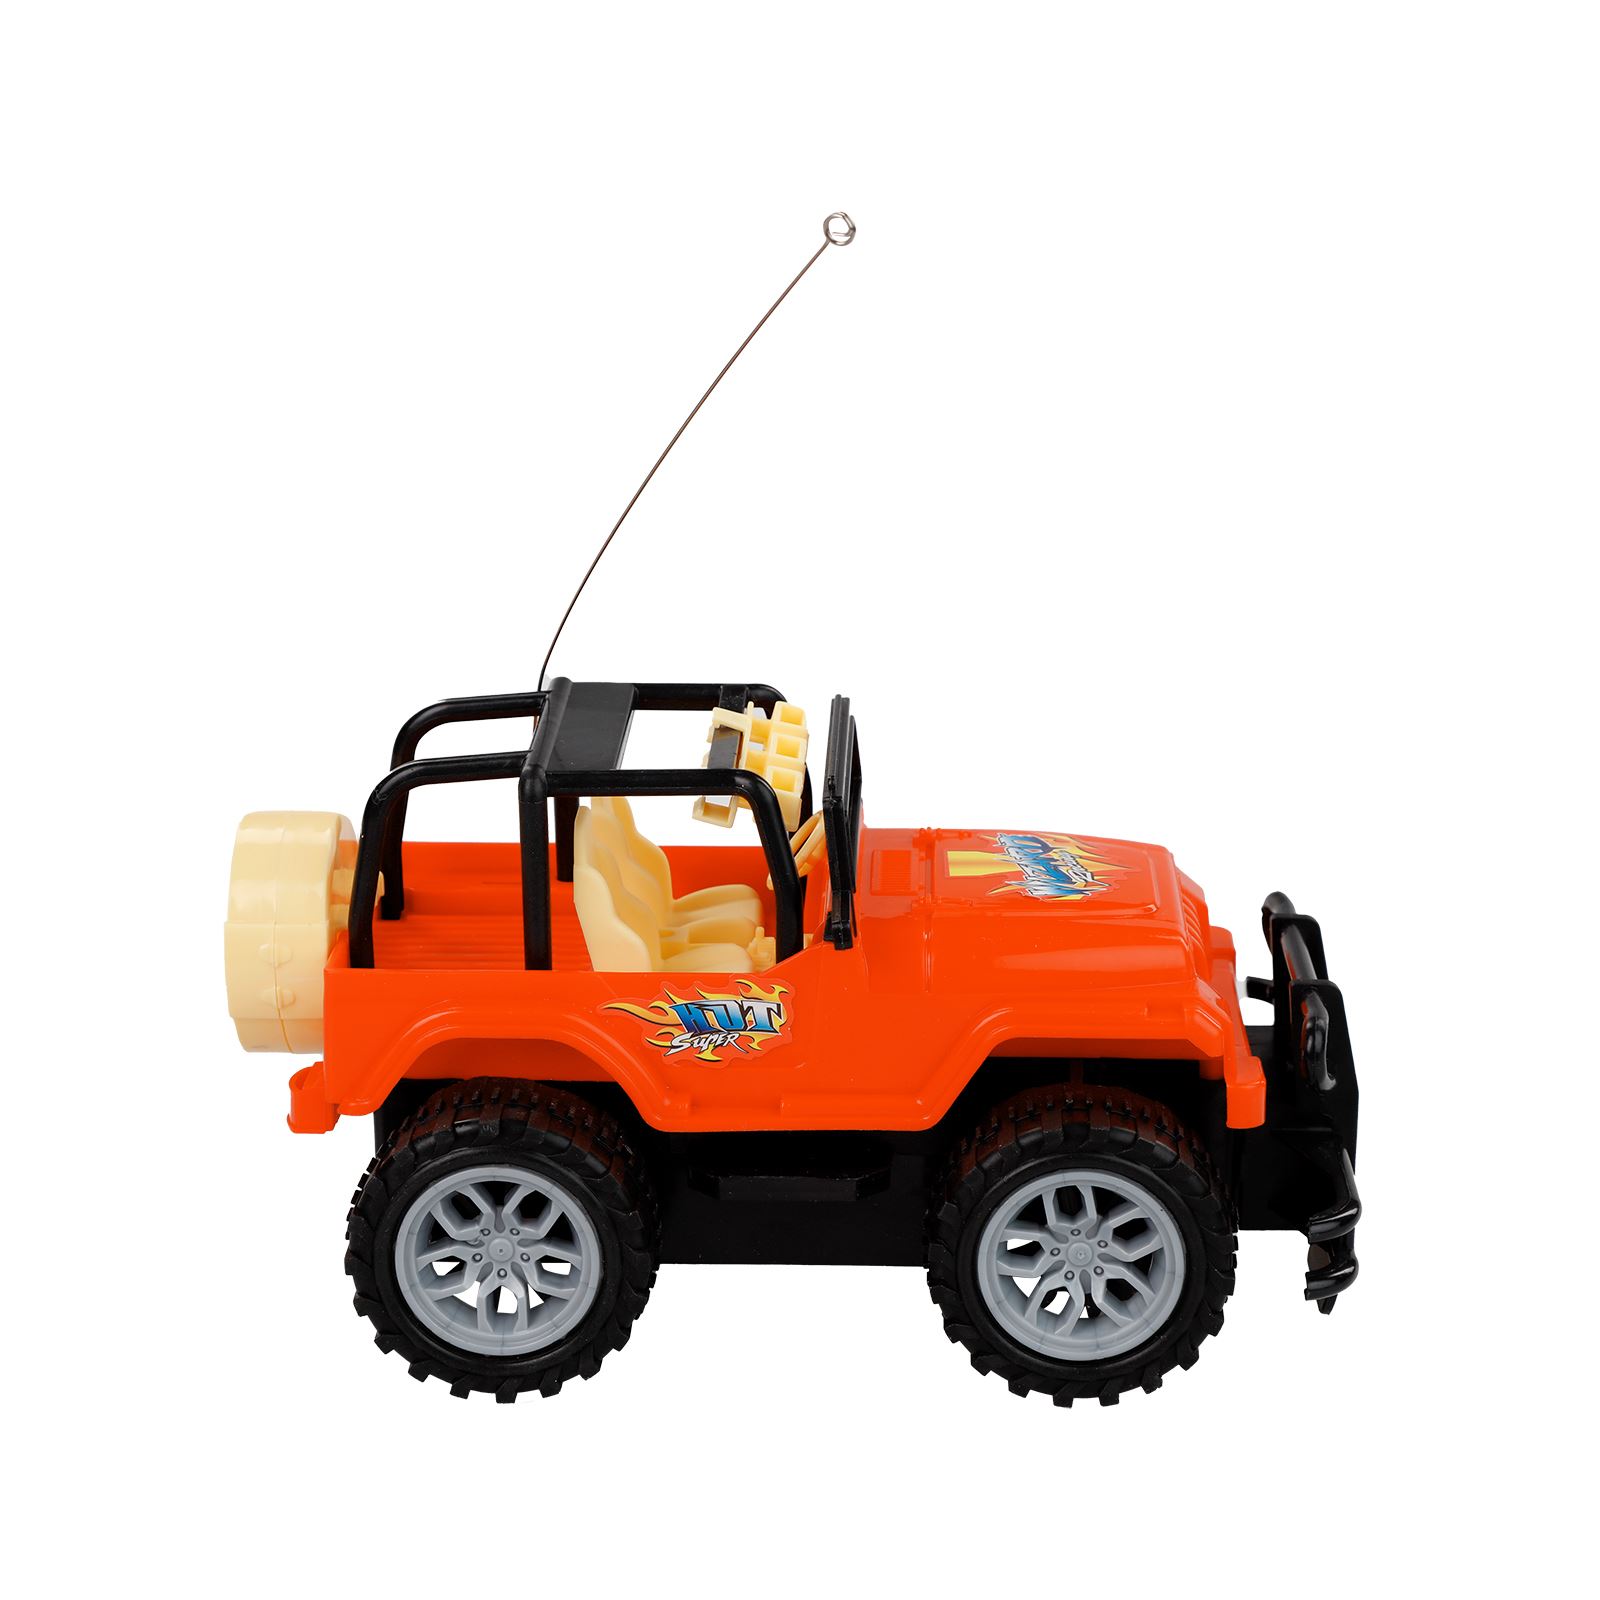 Prestij Oyuncak 2 Fonksiyonlu Safari Jeep Turuncu